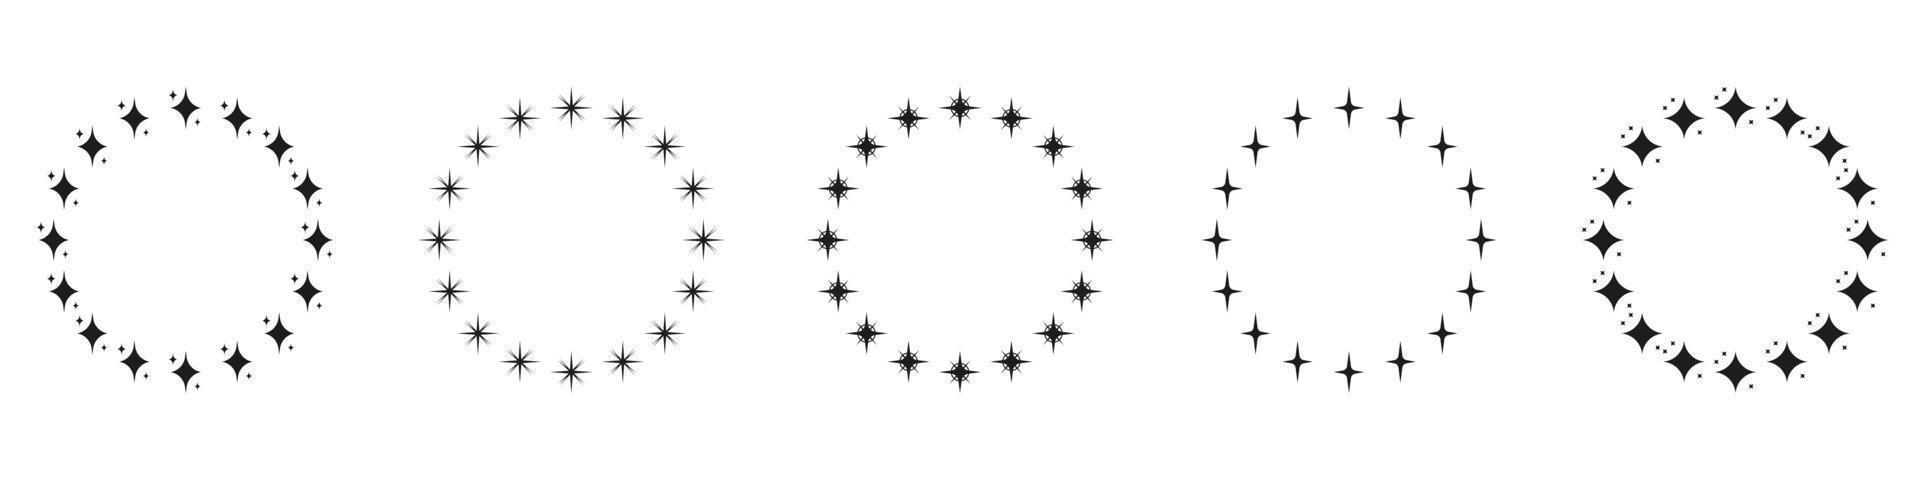 conjunto de iconos de silueta de estrellas en forma de círculo. icono de adorno de decoración circular sobre fondo blanco. marco de premio redondo moderno con pictograma de estrellas negras. ilustración vectorial aislada. vector